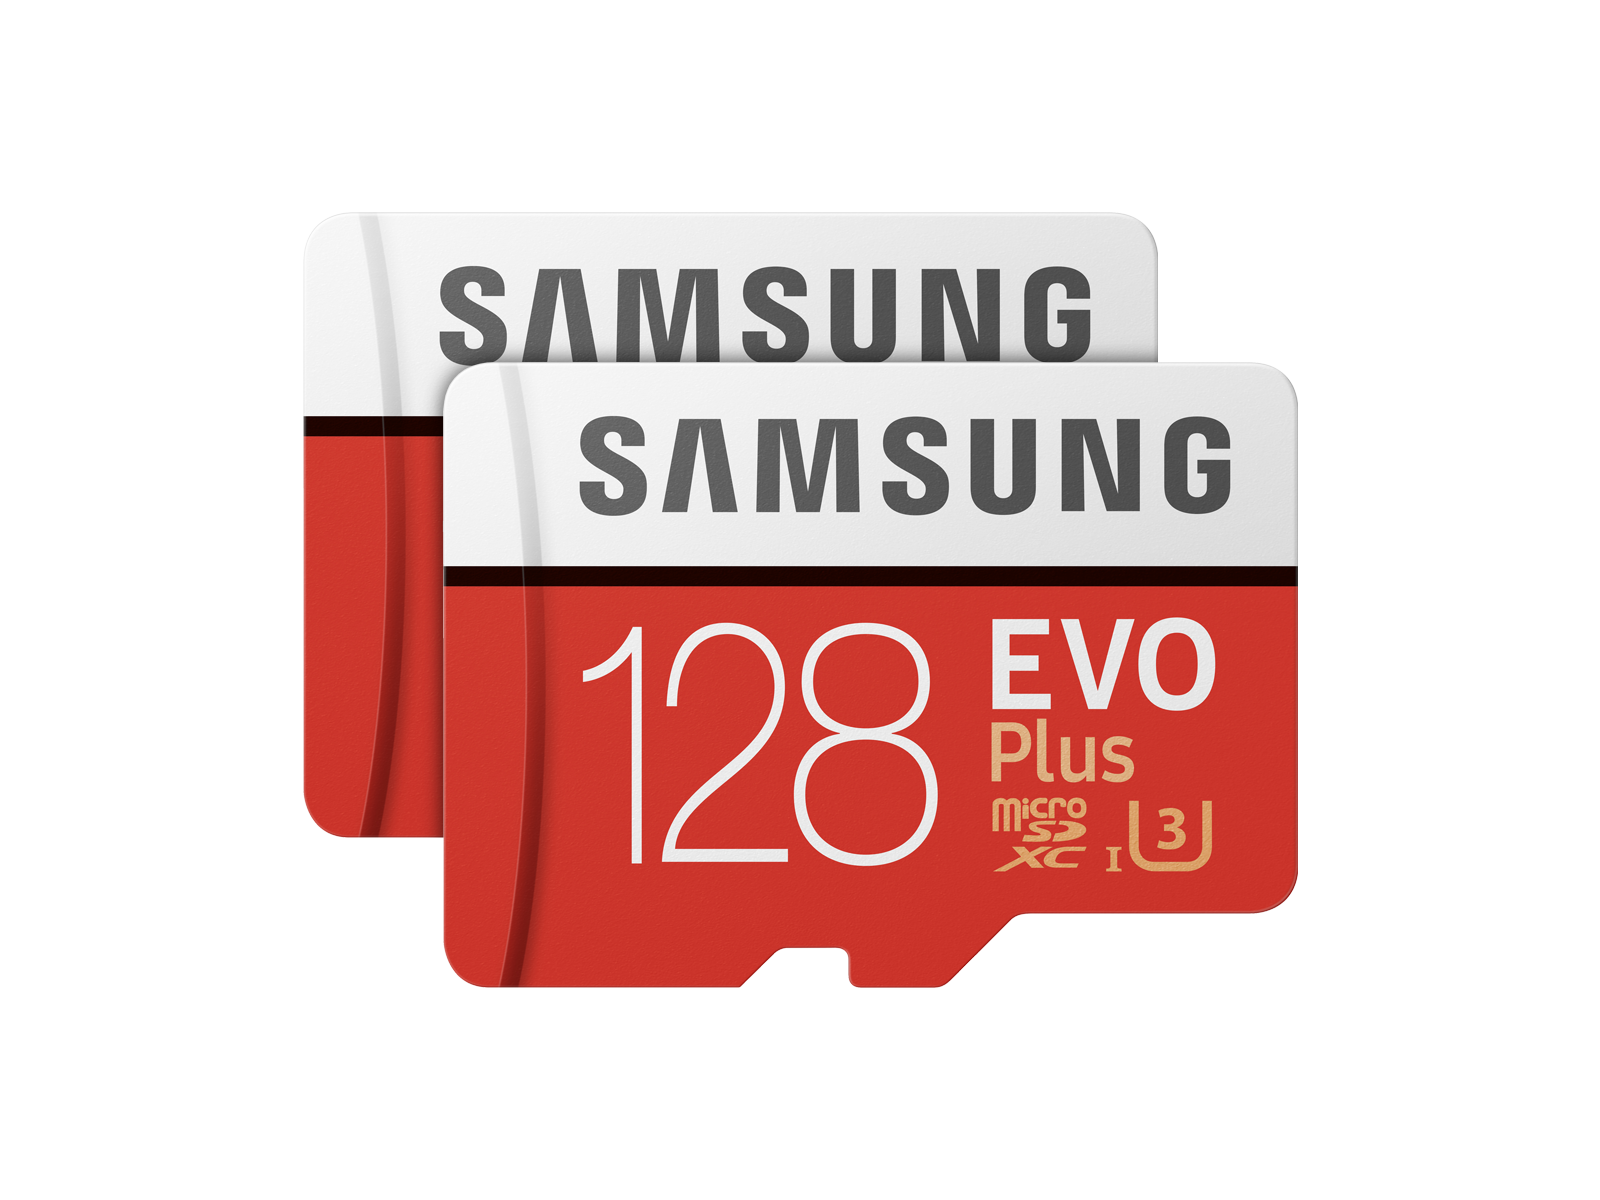 EVO Plus microSDXC Memory Card 128GB - 2 Pack